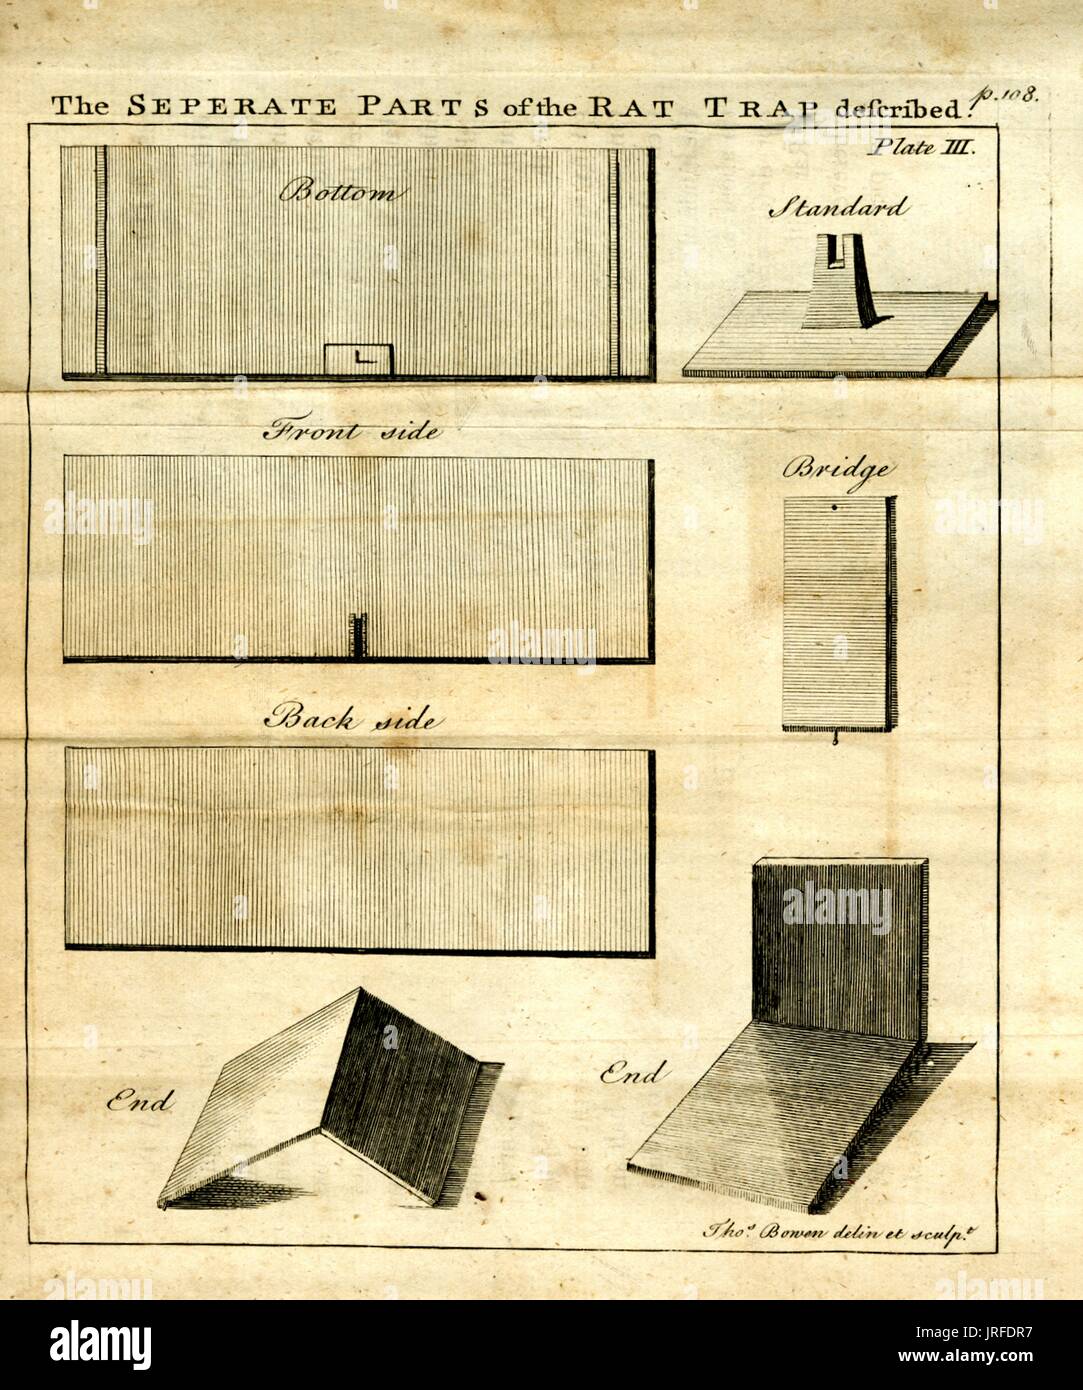 Die einzelnen Teile der Ratte trap beschrieben, Abbildung: Flat Pack Board von der Erfindung Beschreibung zeigt eine bessere Mausefalle, 1900. Stockfoto